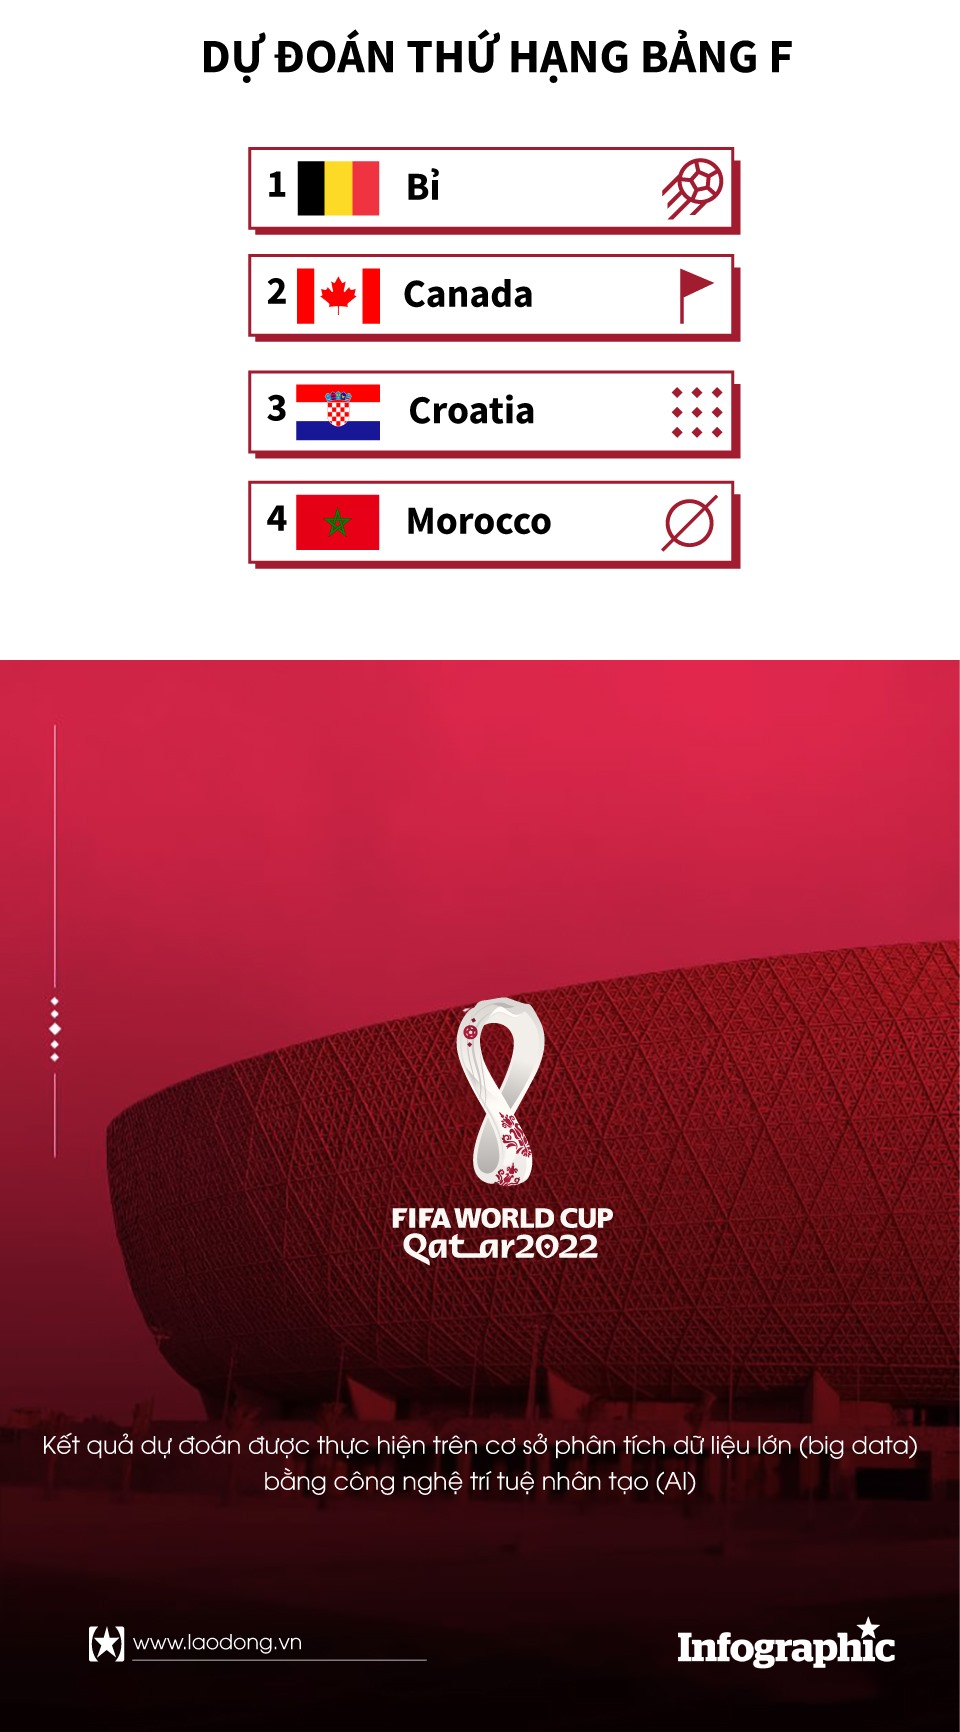 lịch thi đấu world cup hôm nay bỉ vs croatia dự đoán tỉ số world cup 2022